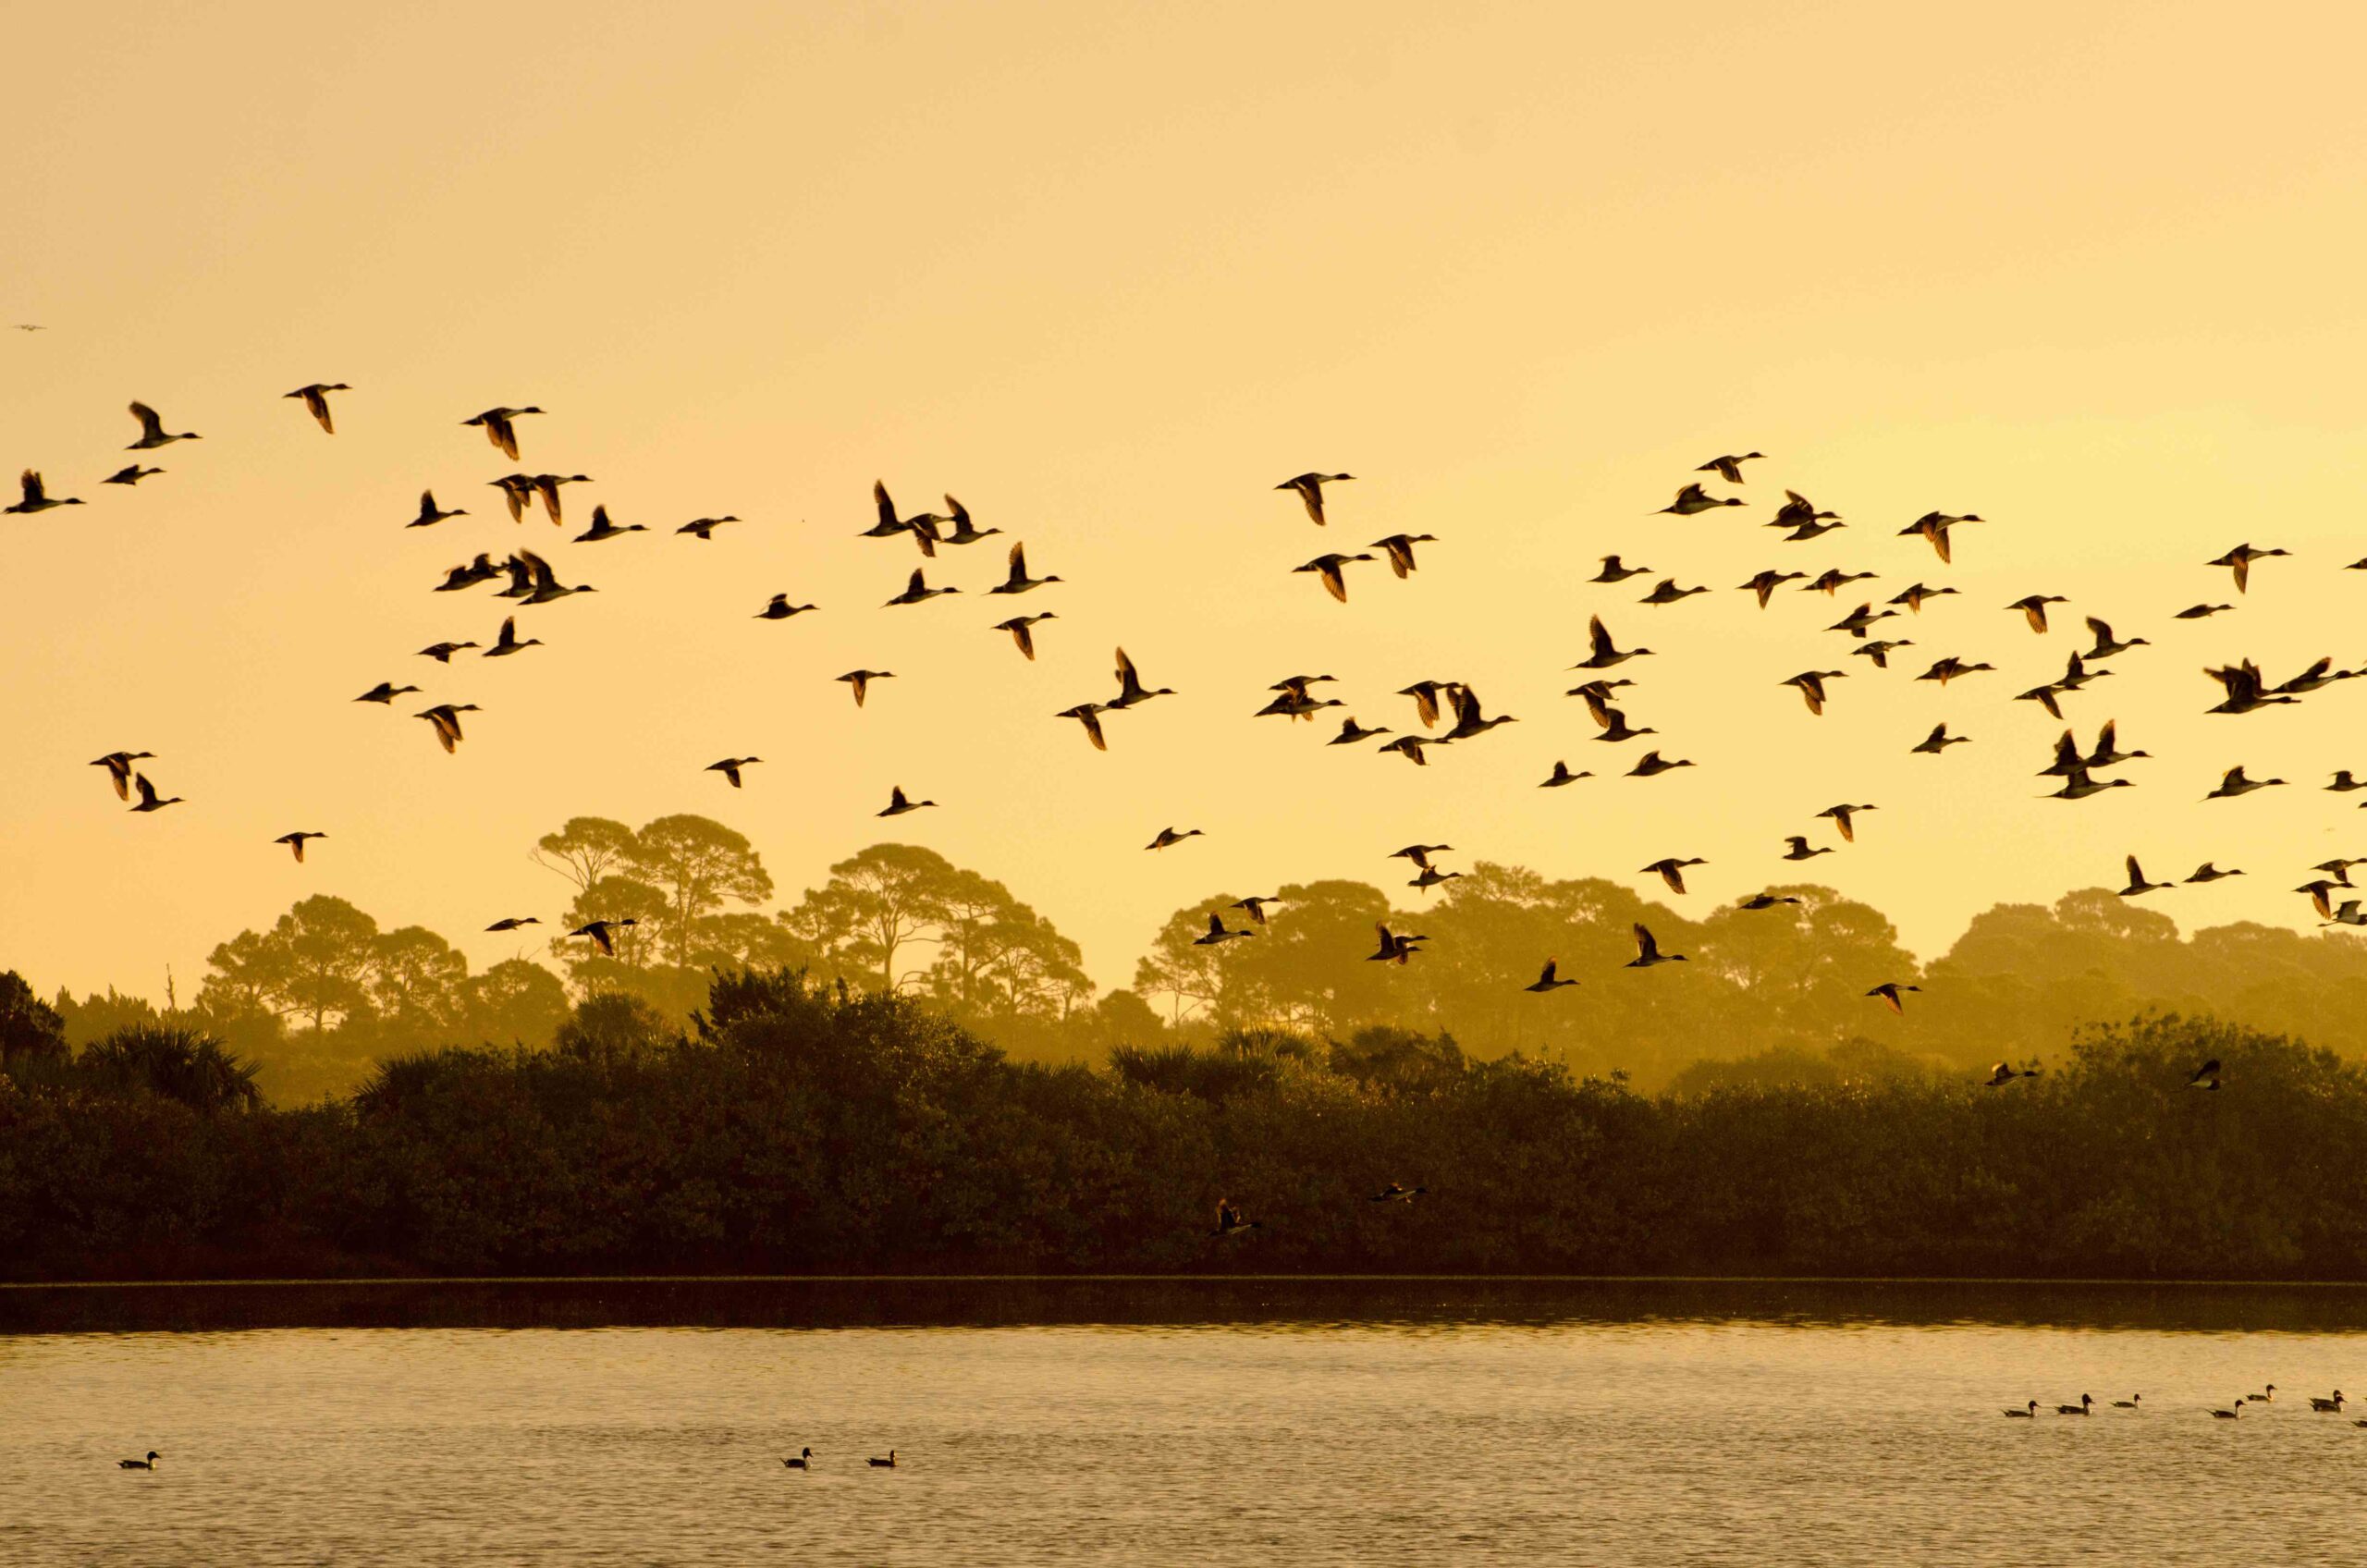 Birds fly over Merritt Island Wildlife Refuge